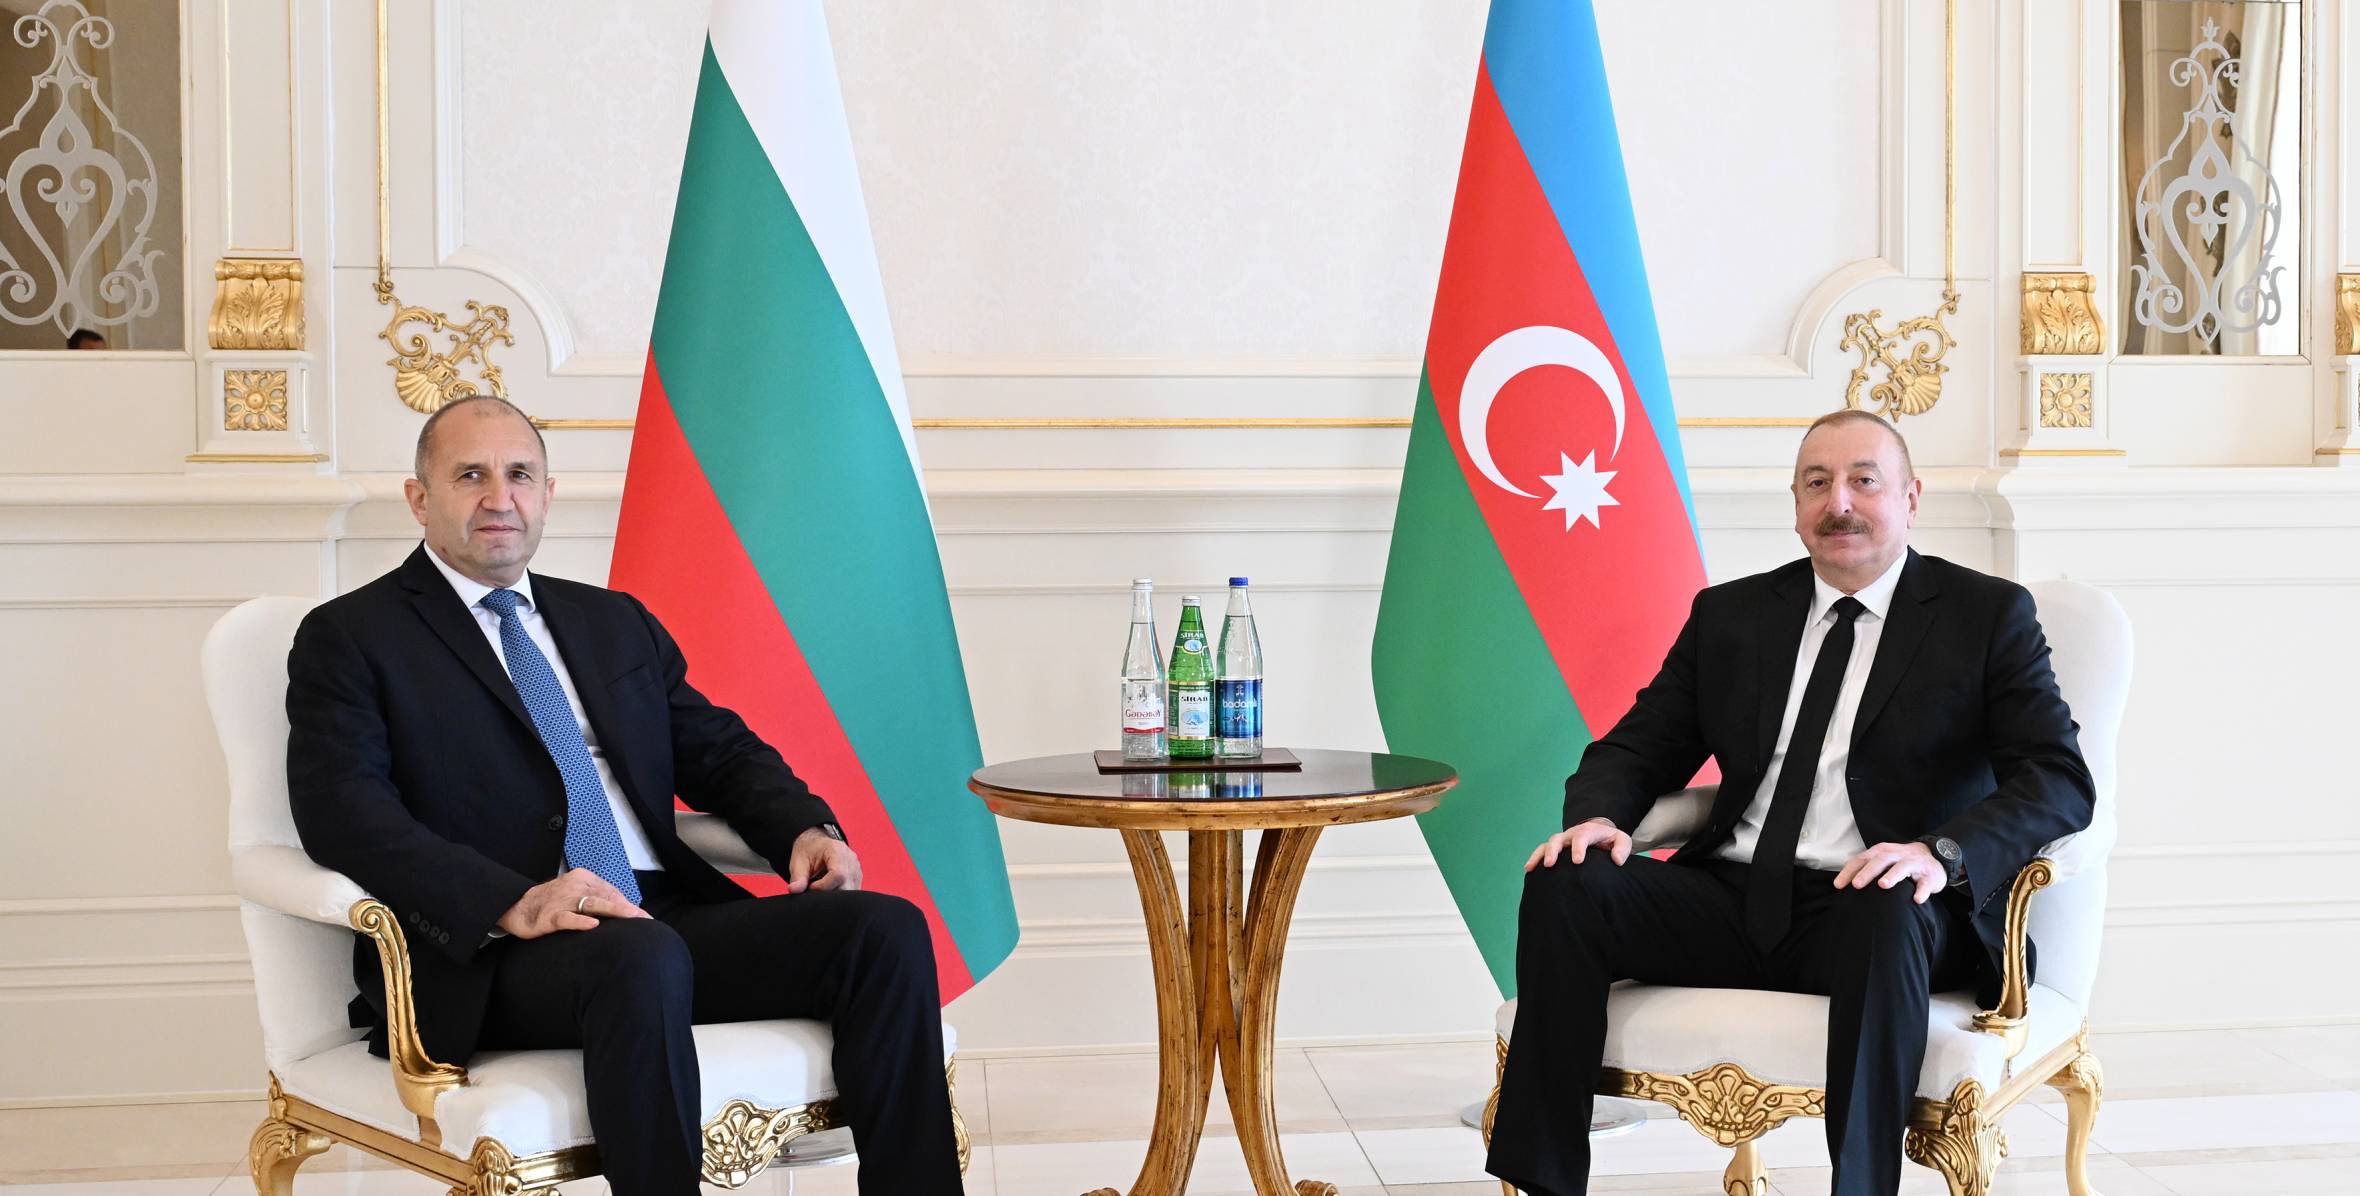 Ilham Aliyev held one-on-one meeting with President of Bulgaria Rumen Radev